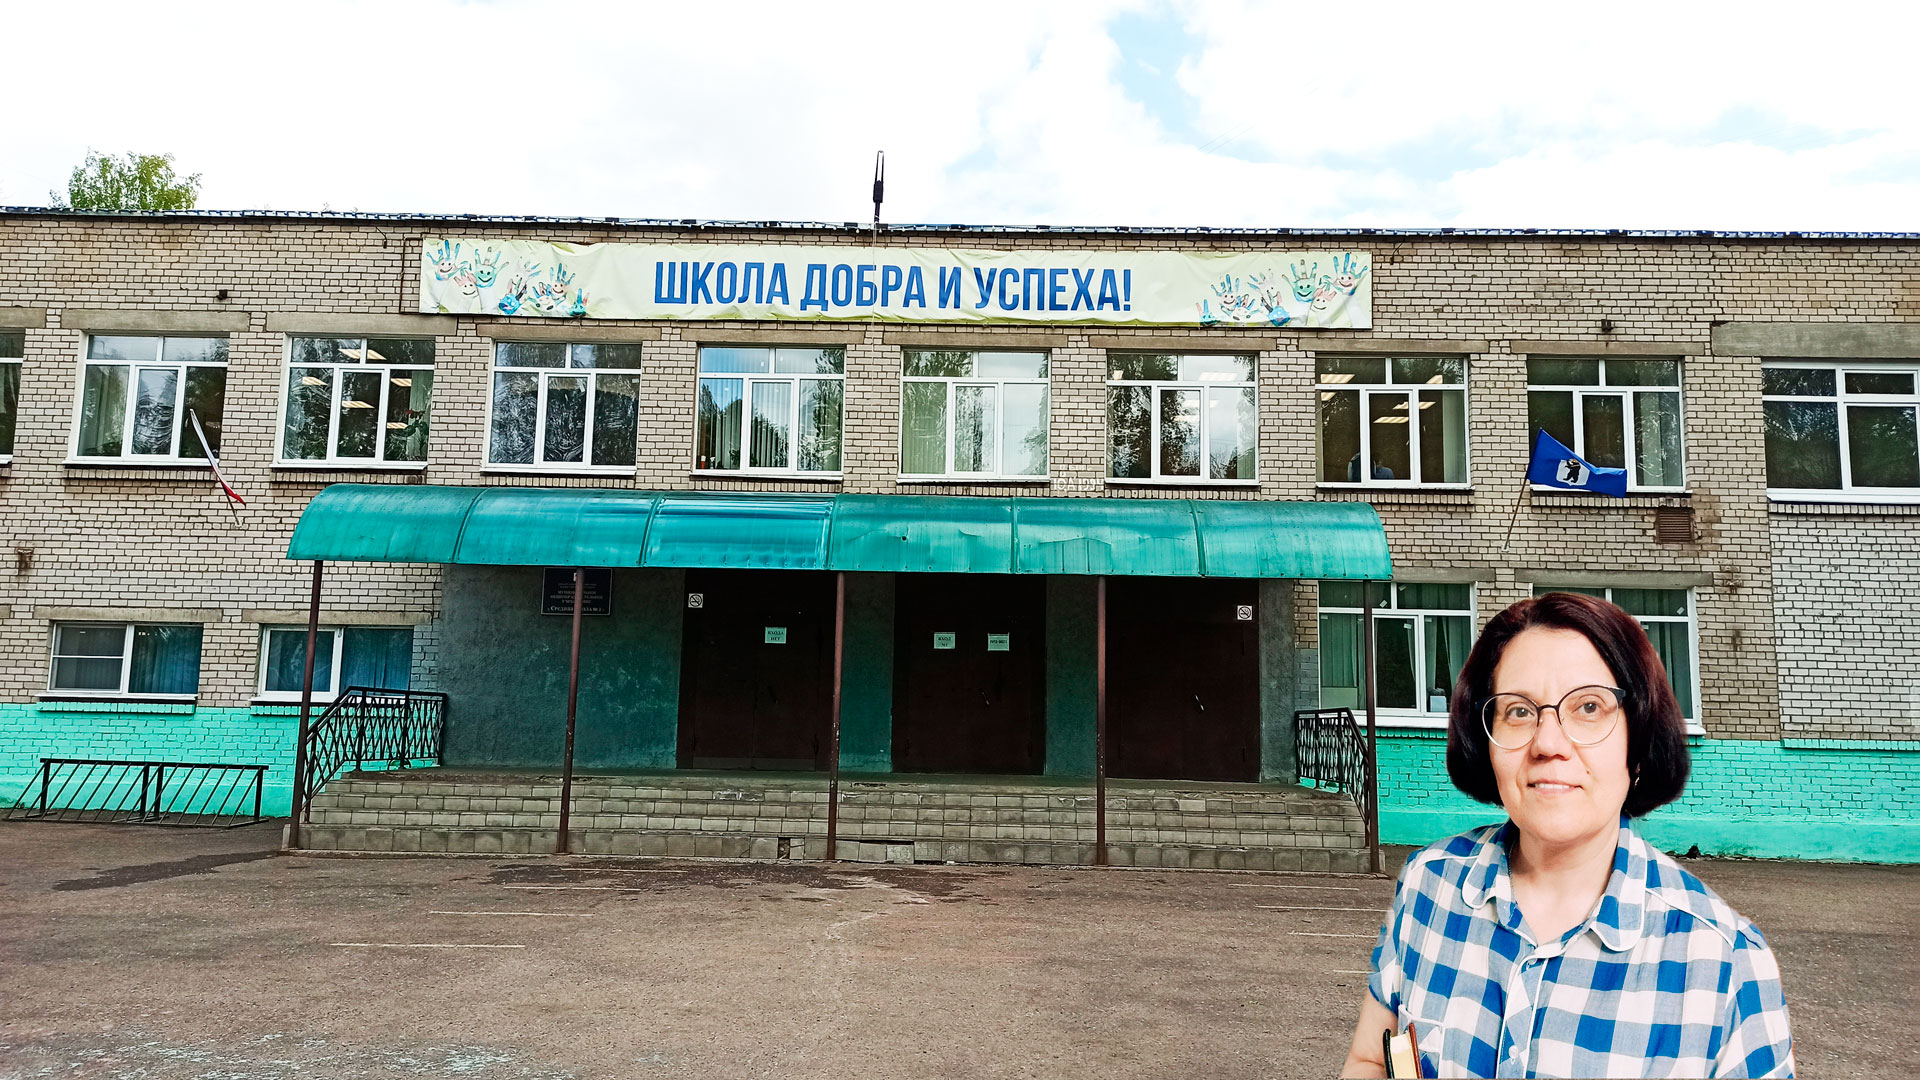 Школа 2 Ярославль: центральный вход в здание школьной организации.